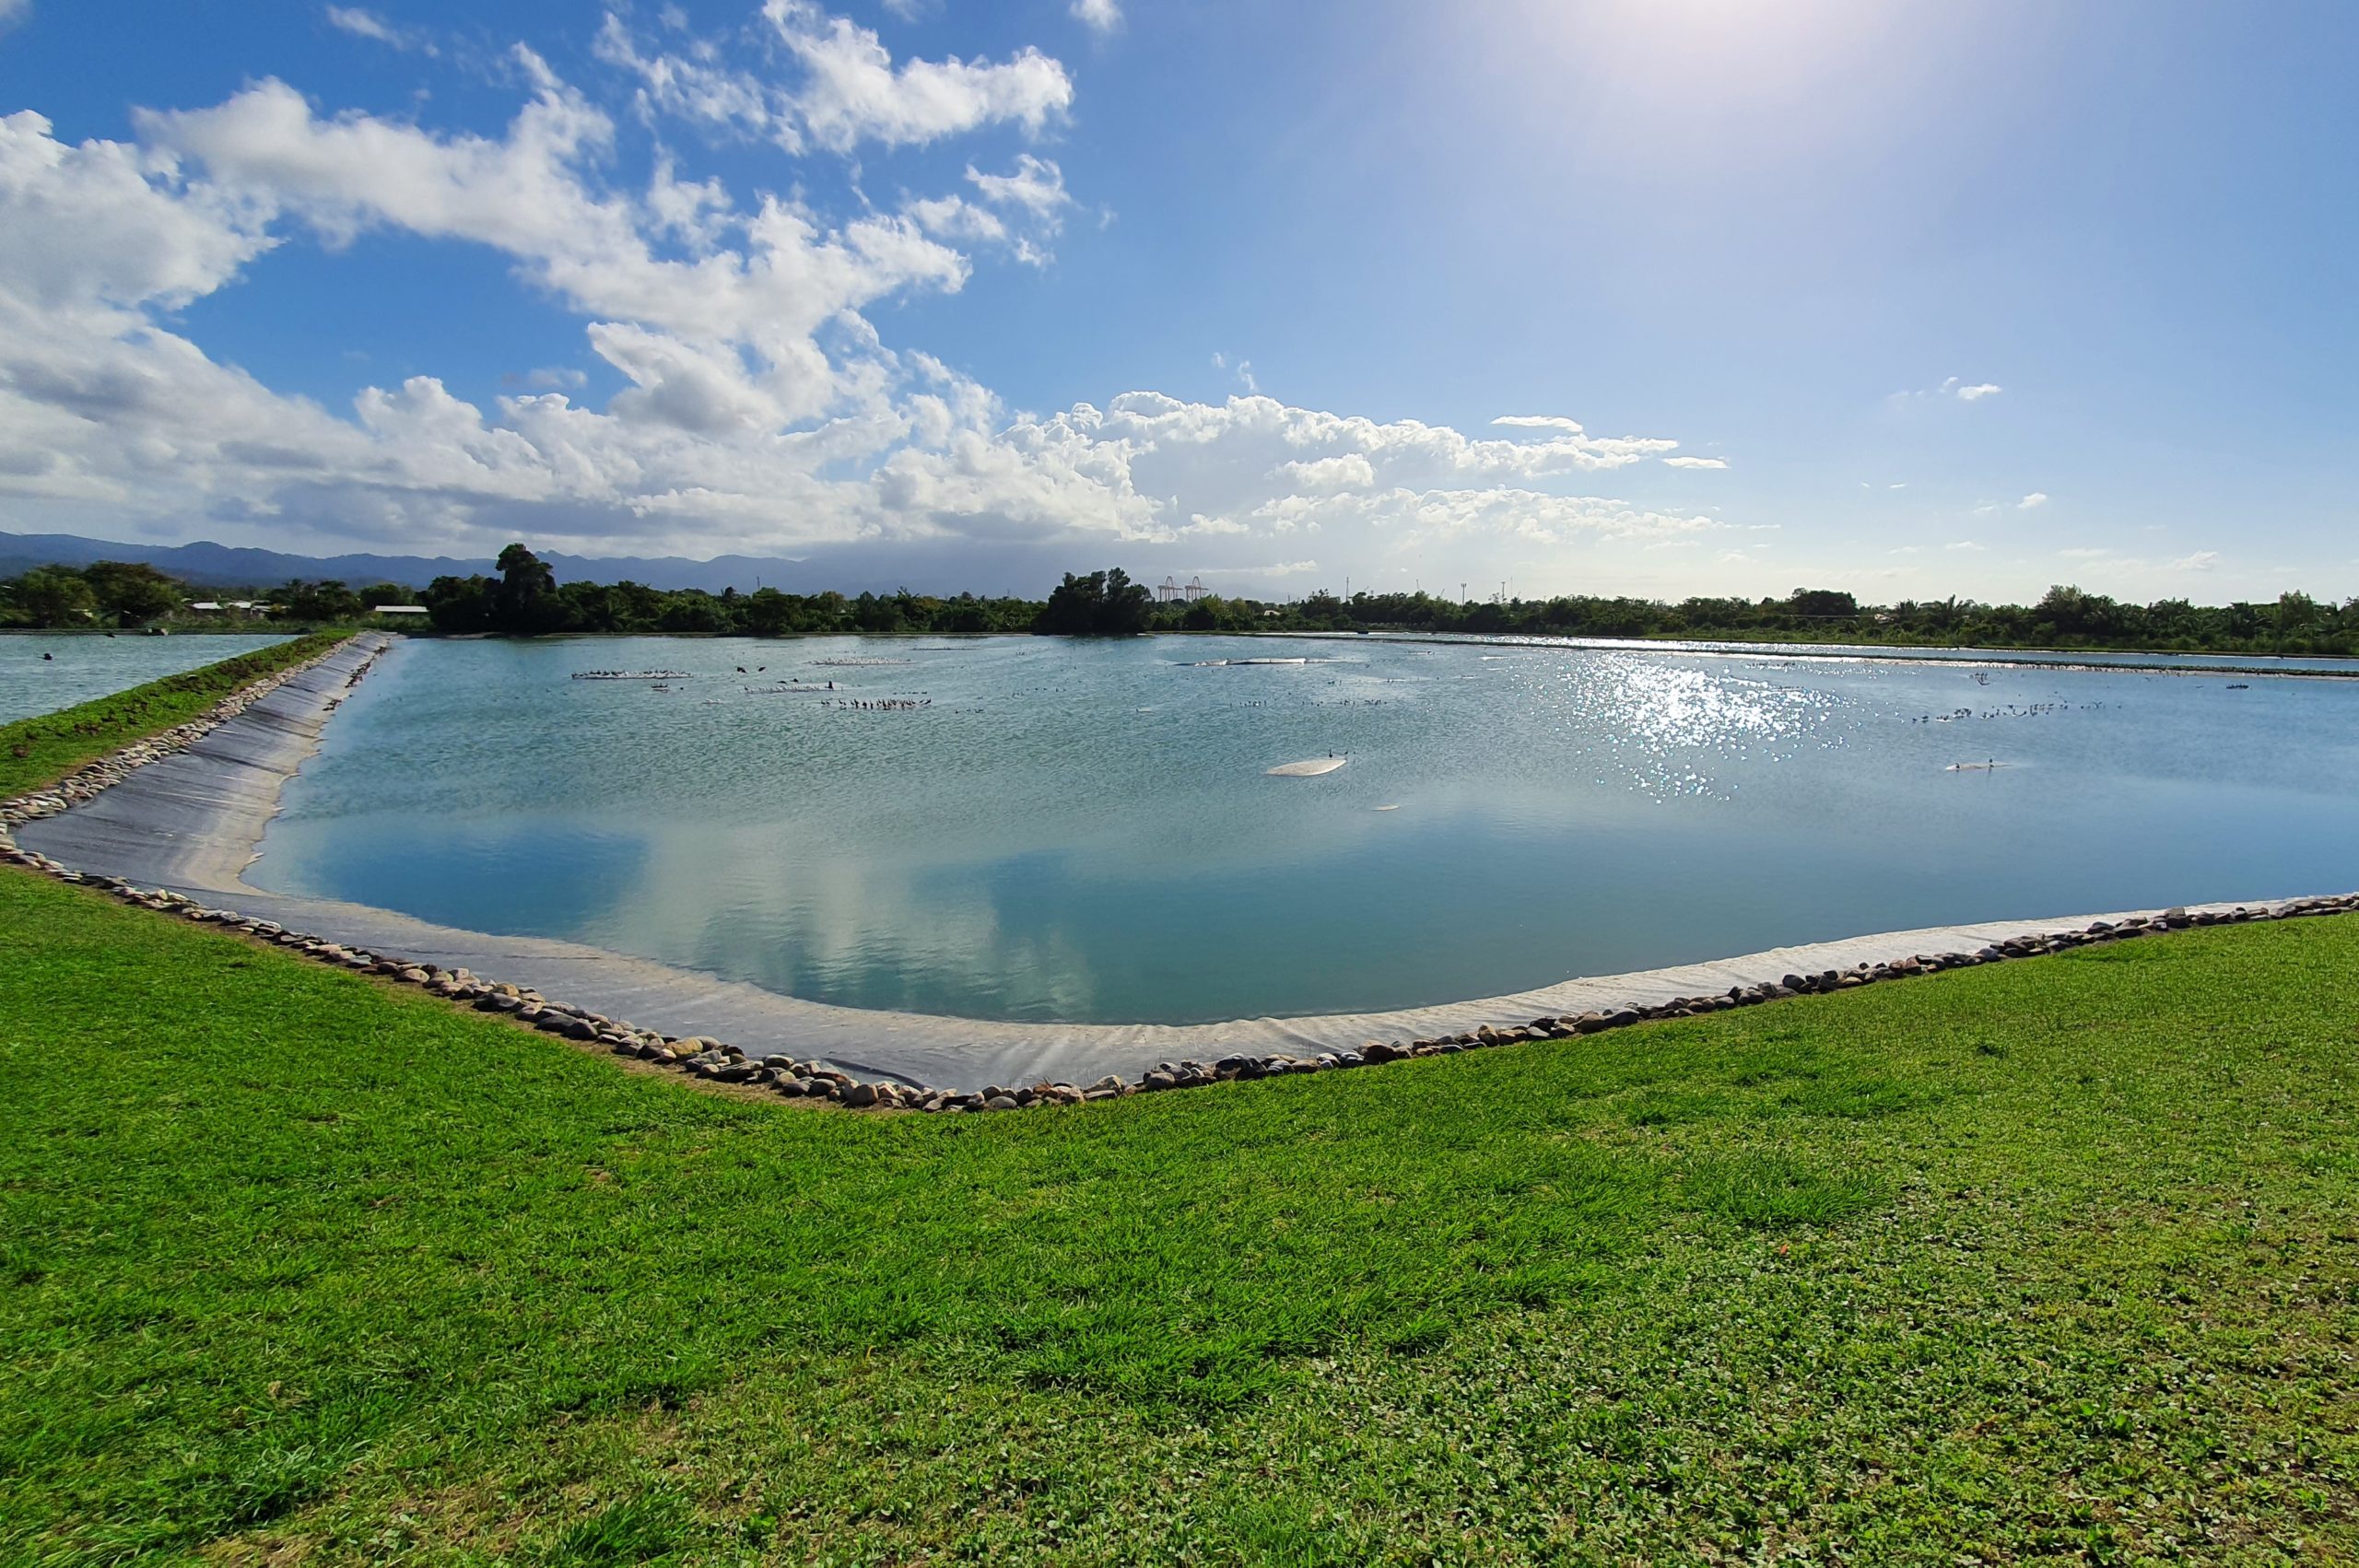 Ein blauer, künstlich angelegter Teich mit ein wenig Grünfläche im Vordergrund und dem blauen Himmel im Hintergrund.